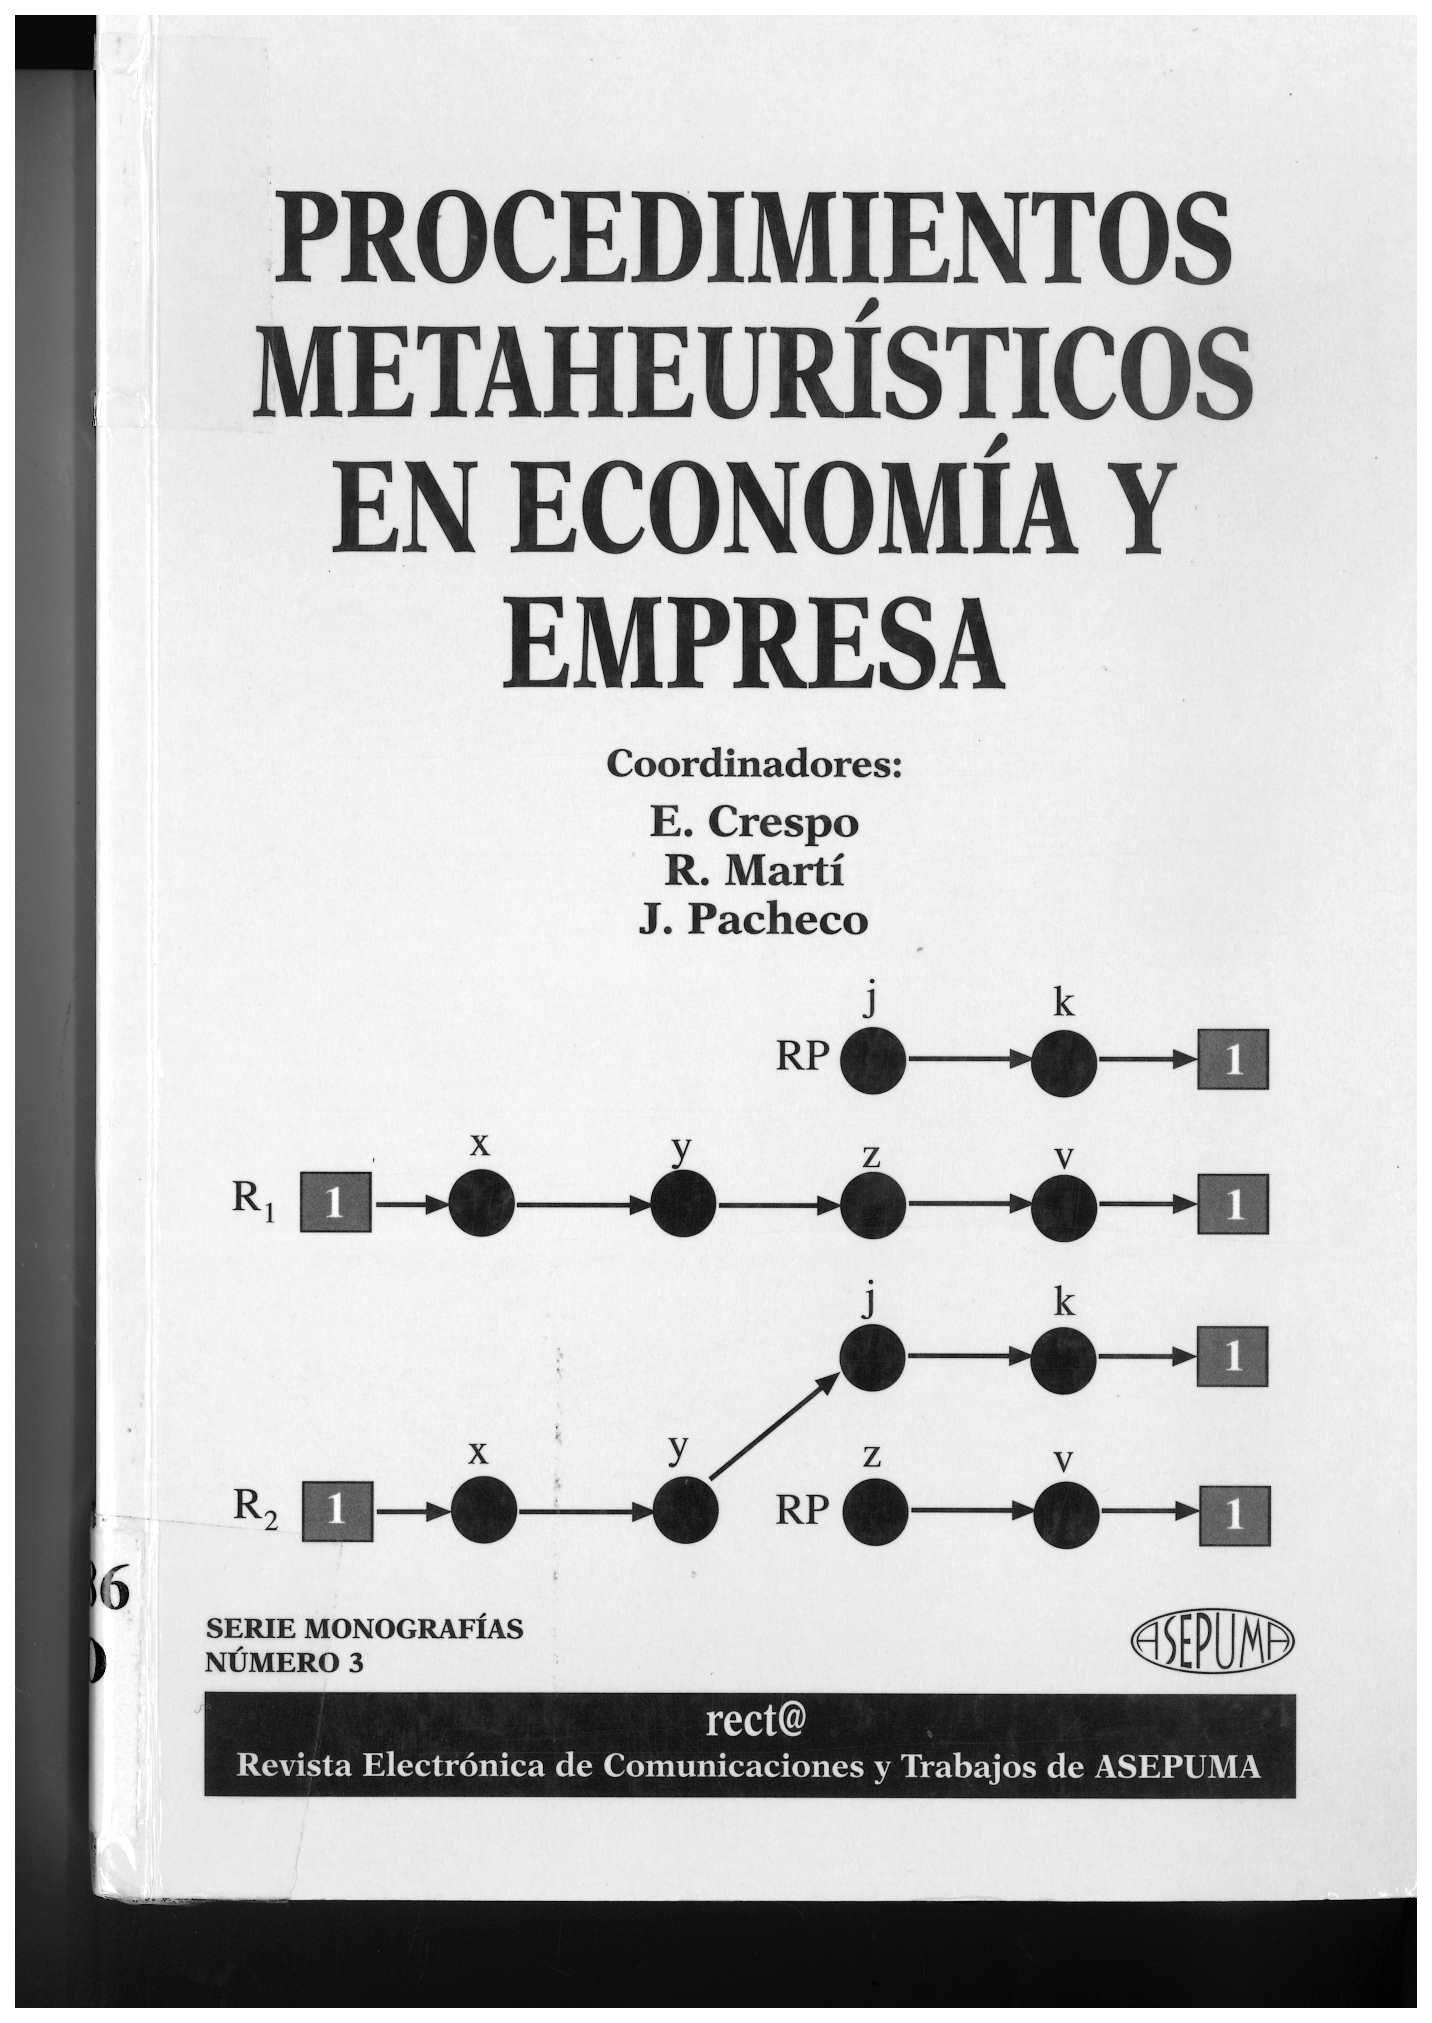 Imagen de portada del libro Procedimientos metaheurísticos en economía y empresa